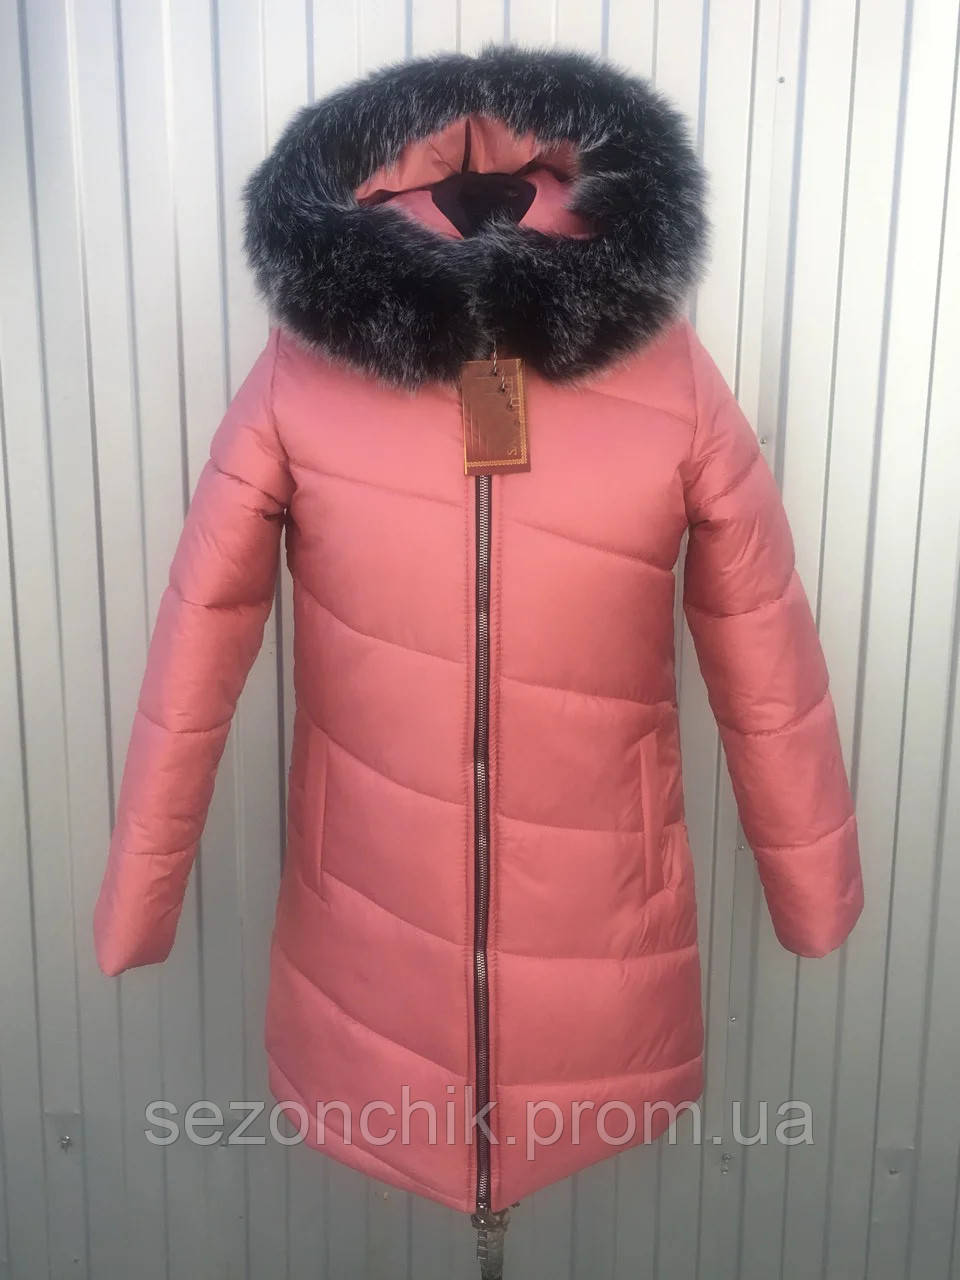 Жіночі зимові куртки пуховики інтернет магазин розміри 40-50